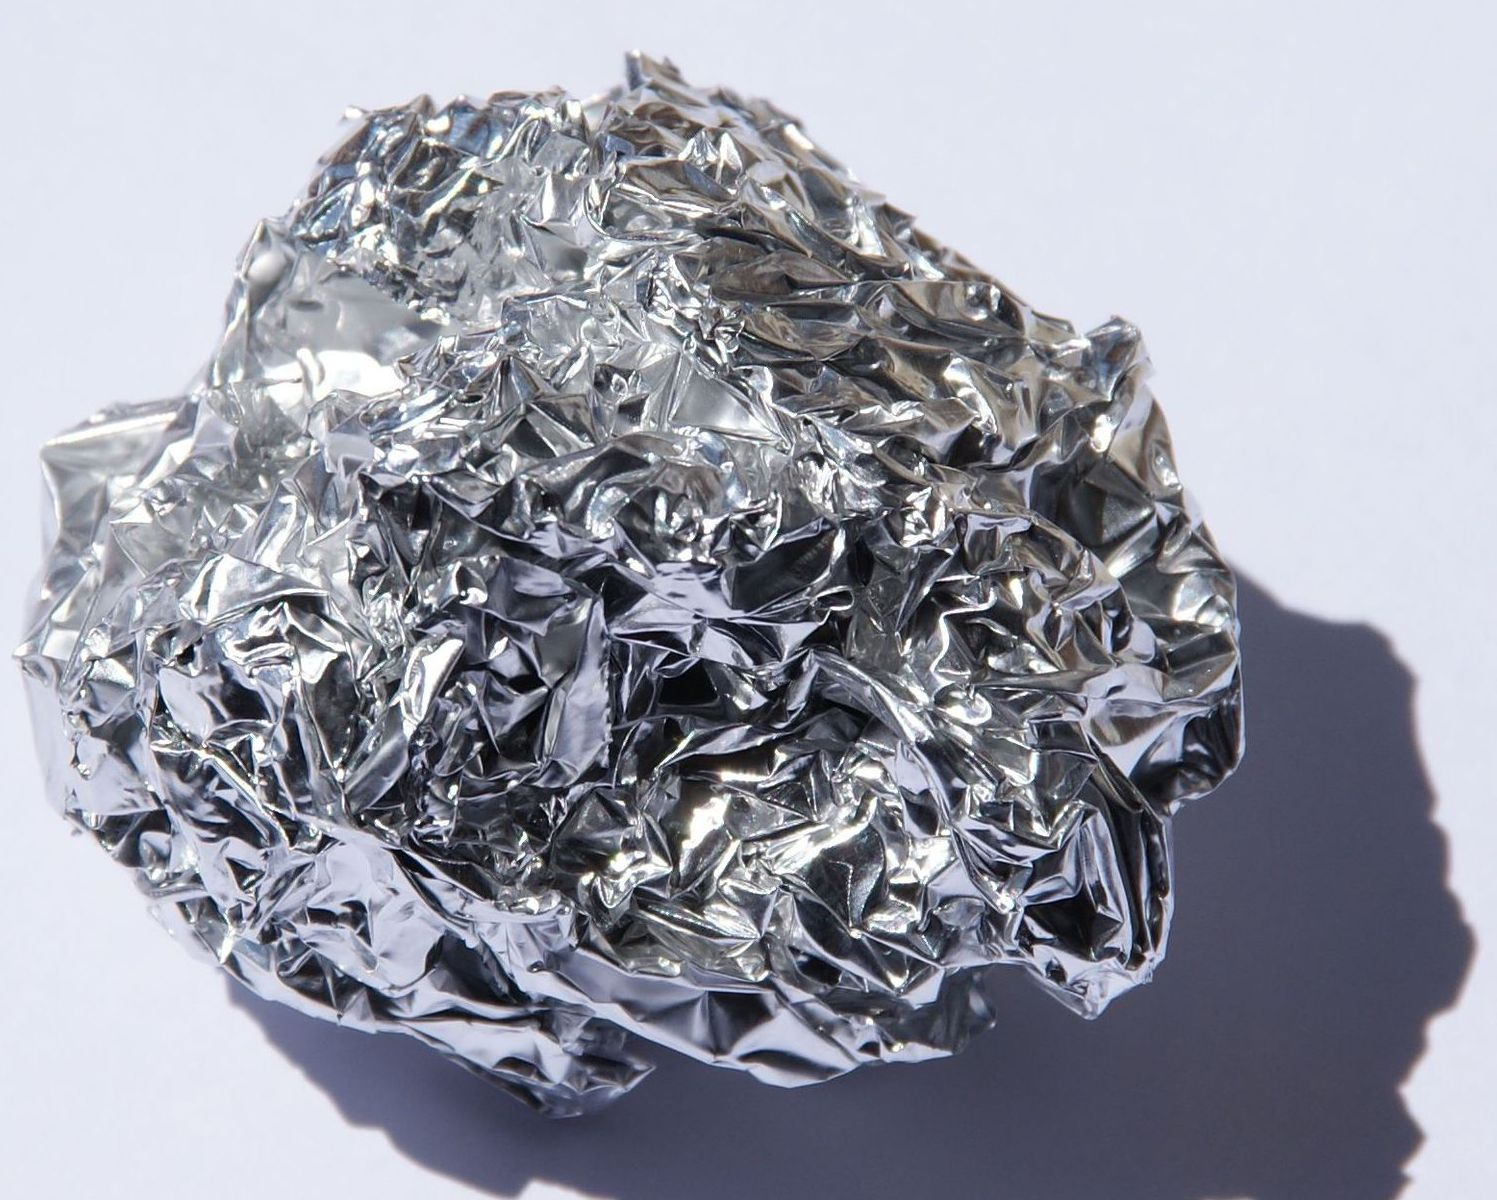 Металл железо известен человеку еще с глубокой. Дюраль алюминий сплав. Алюминий хим элемент. Сплавы алюминий-медь-кремний. Алюминий a5n.